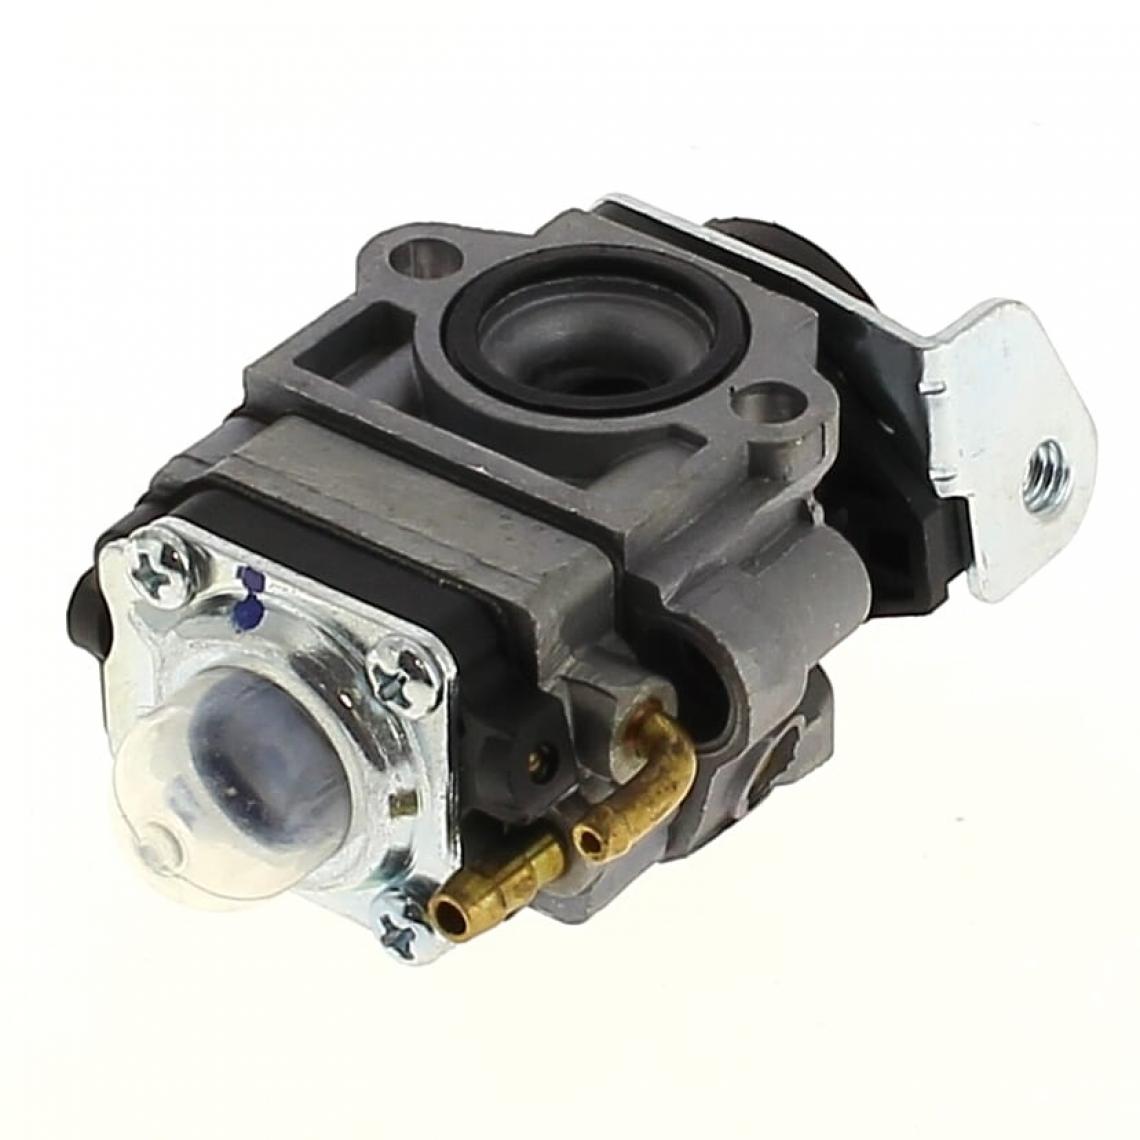 Alpina - Carburateur mz1103b 123054036/0 pour Taille-haie Alpina - Consommables pour outillage motorisé